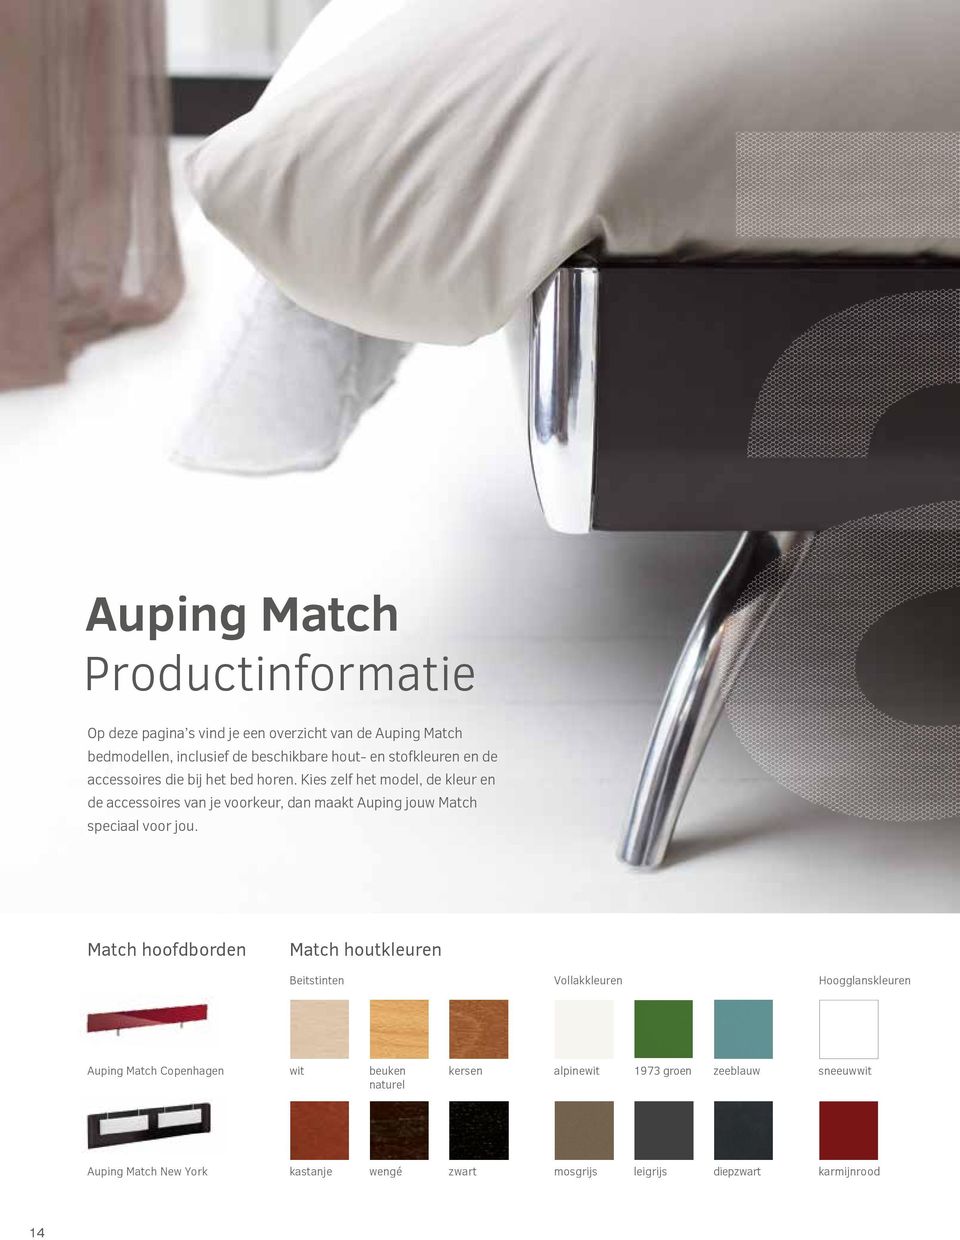 Kies zelf het model, de kleur en de accessoires van je voorkeur, dan maakt Auping jouw Match speciaal voor jou.